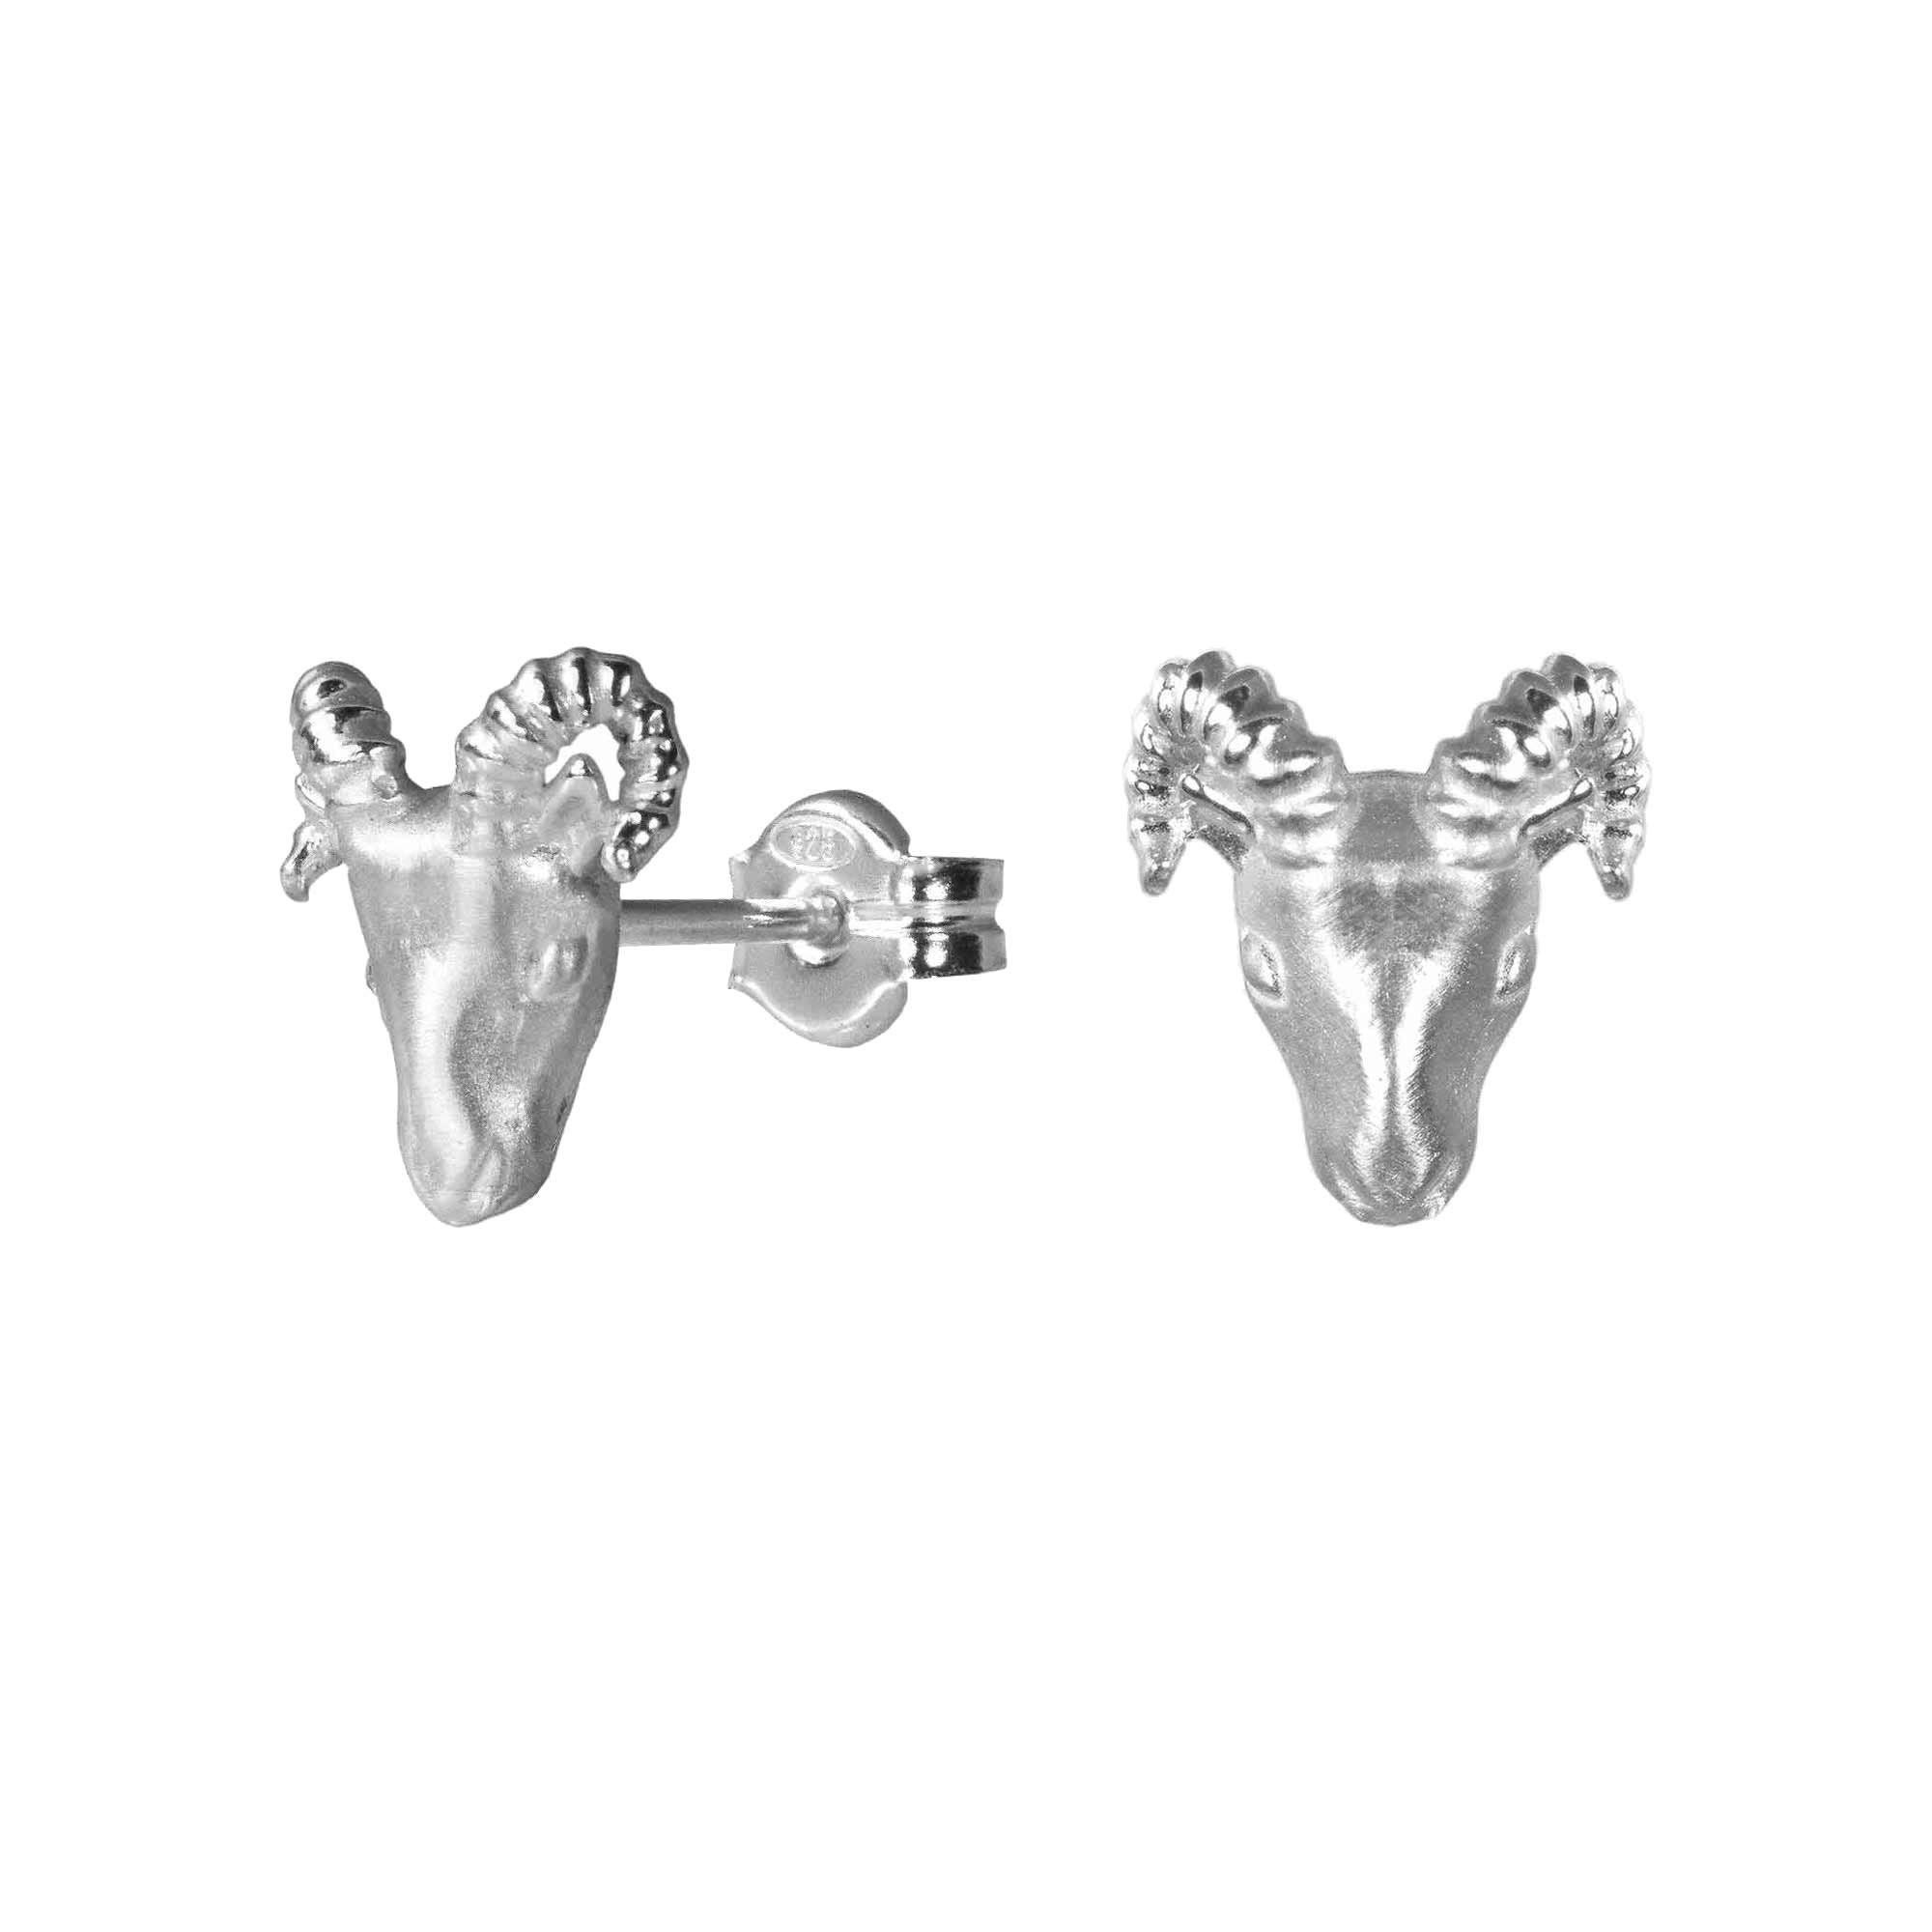 Silver Ram Aries Animal Earrings - Sterling Stud Earrings, Greek Jewelry, Zodiac Gift